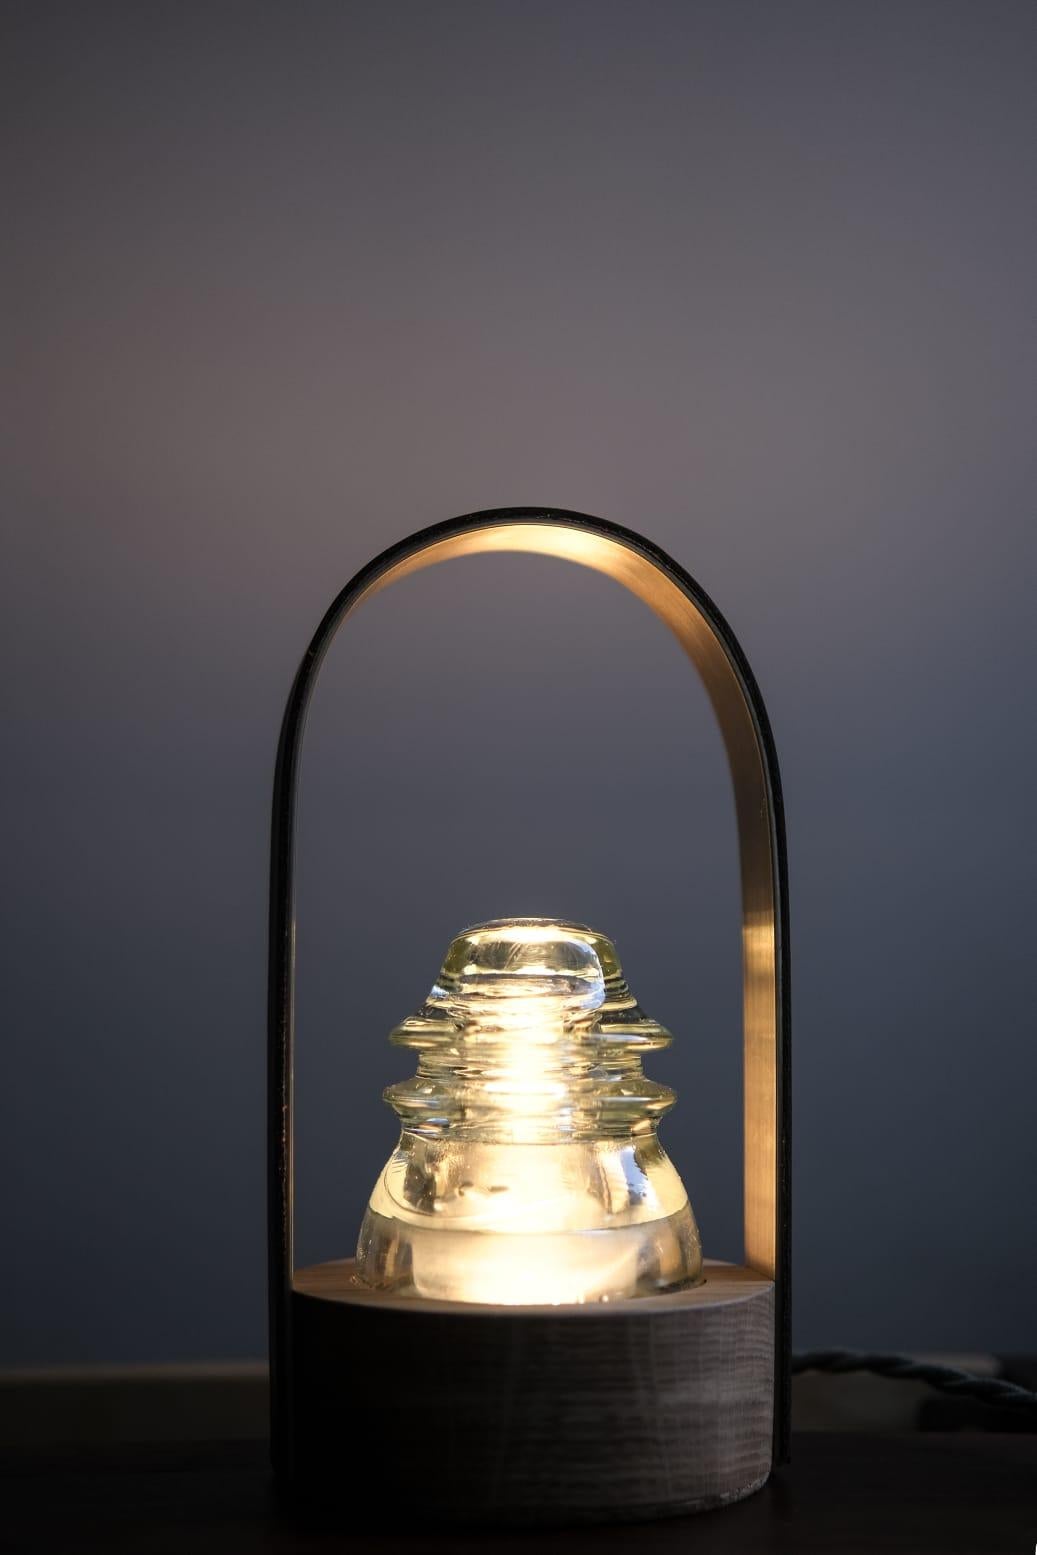 Lampe de table Vitrum de Caio Superchi
Dimensions : D12 x L12 x H23 cm 
Matériaux : laiton, cuir, verre, chêne
Pièce signée et numérotée.

Toutes nos lampes peuvent être câblées en fonction de chaque pays. Si elle est vendue aux États-Unis, elle